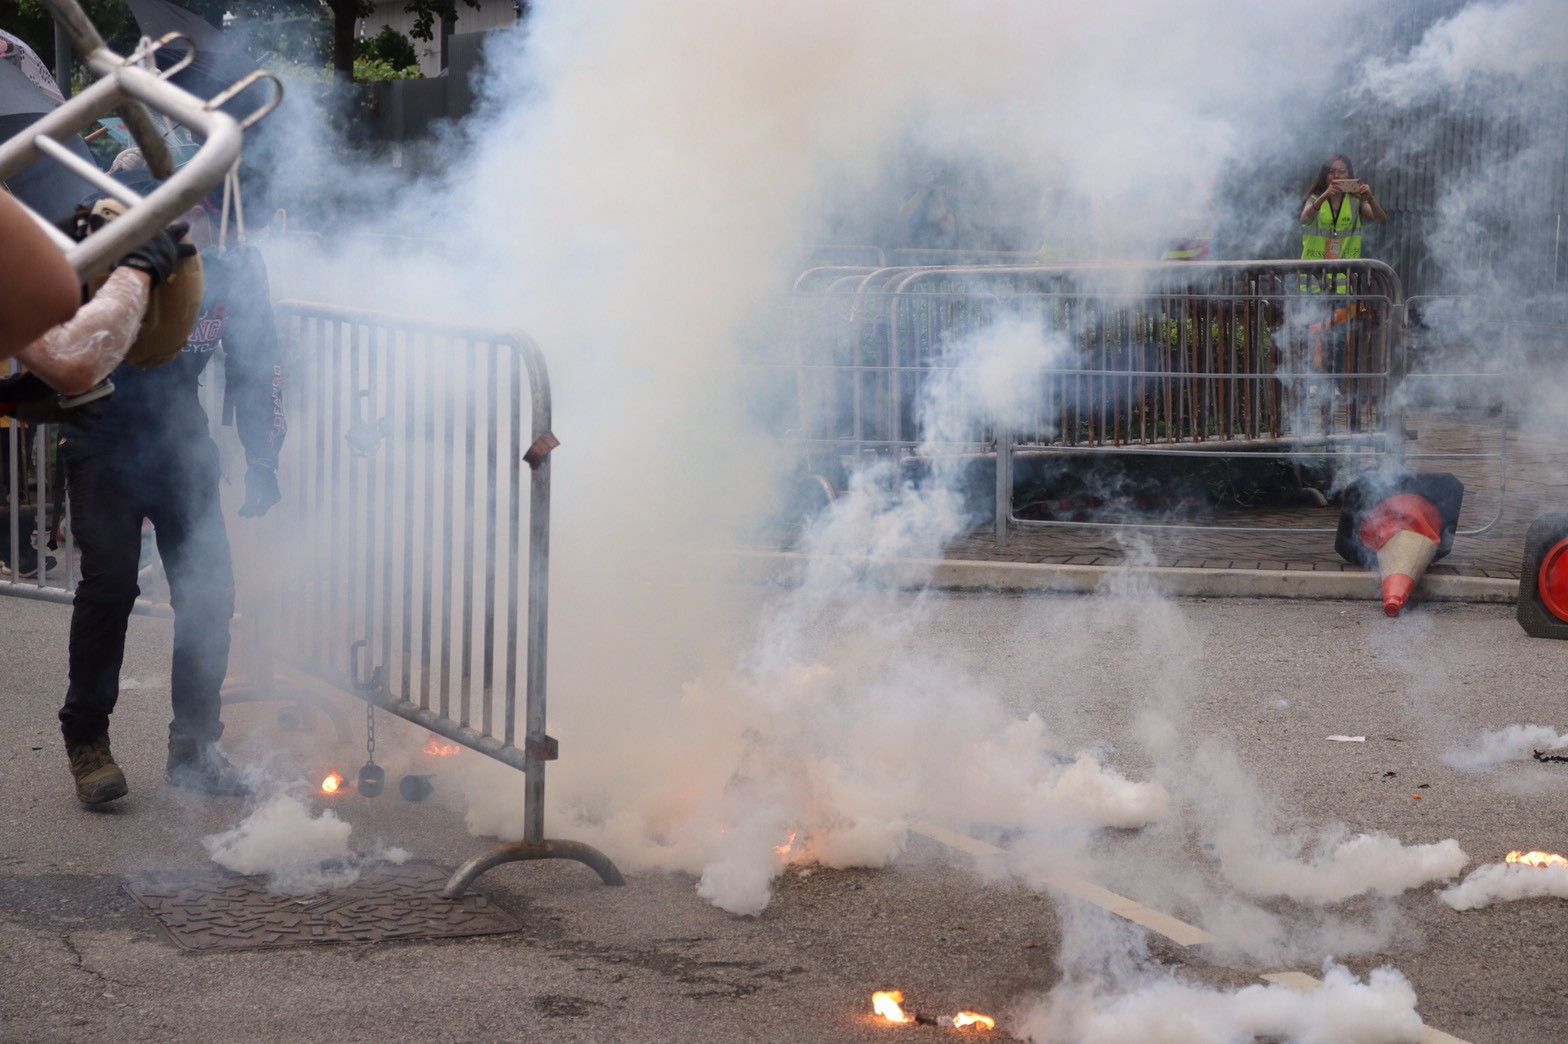 港警武力驅散示威民眾 記者中催淚彈